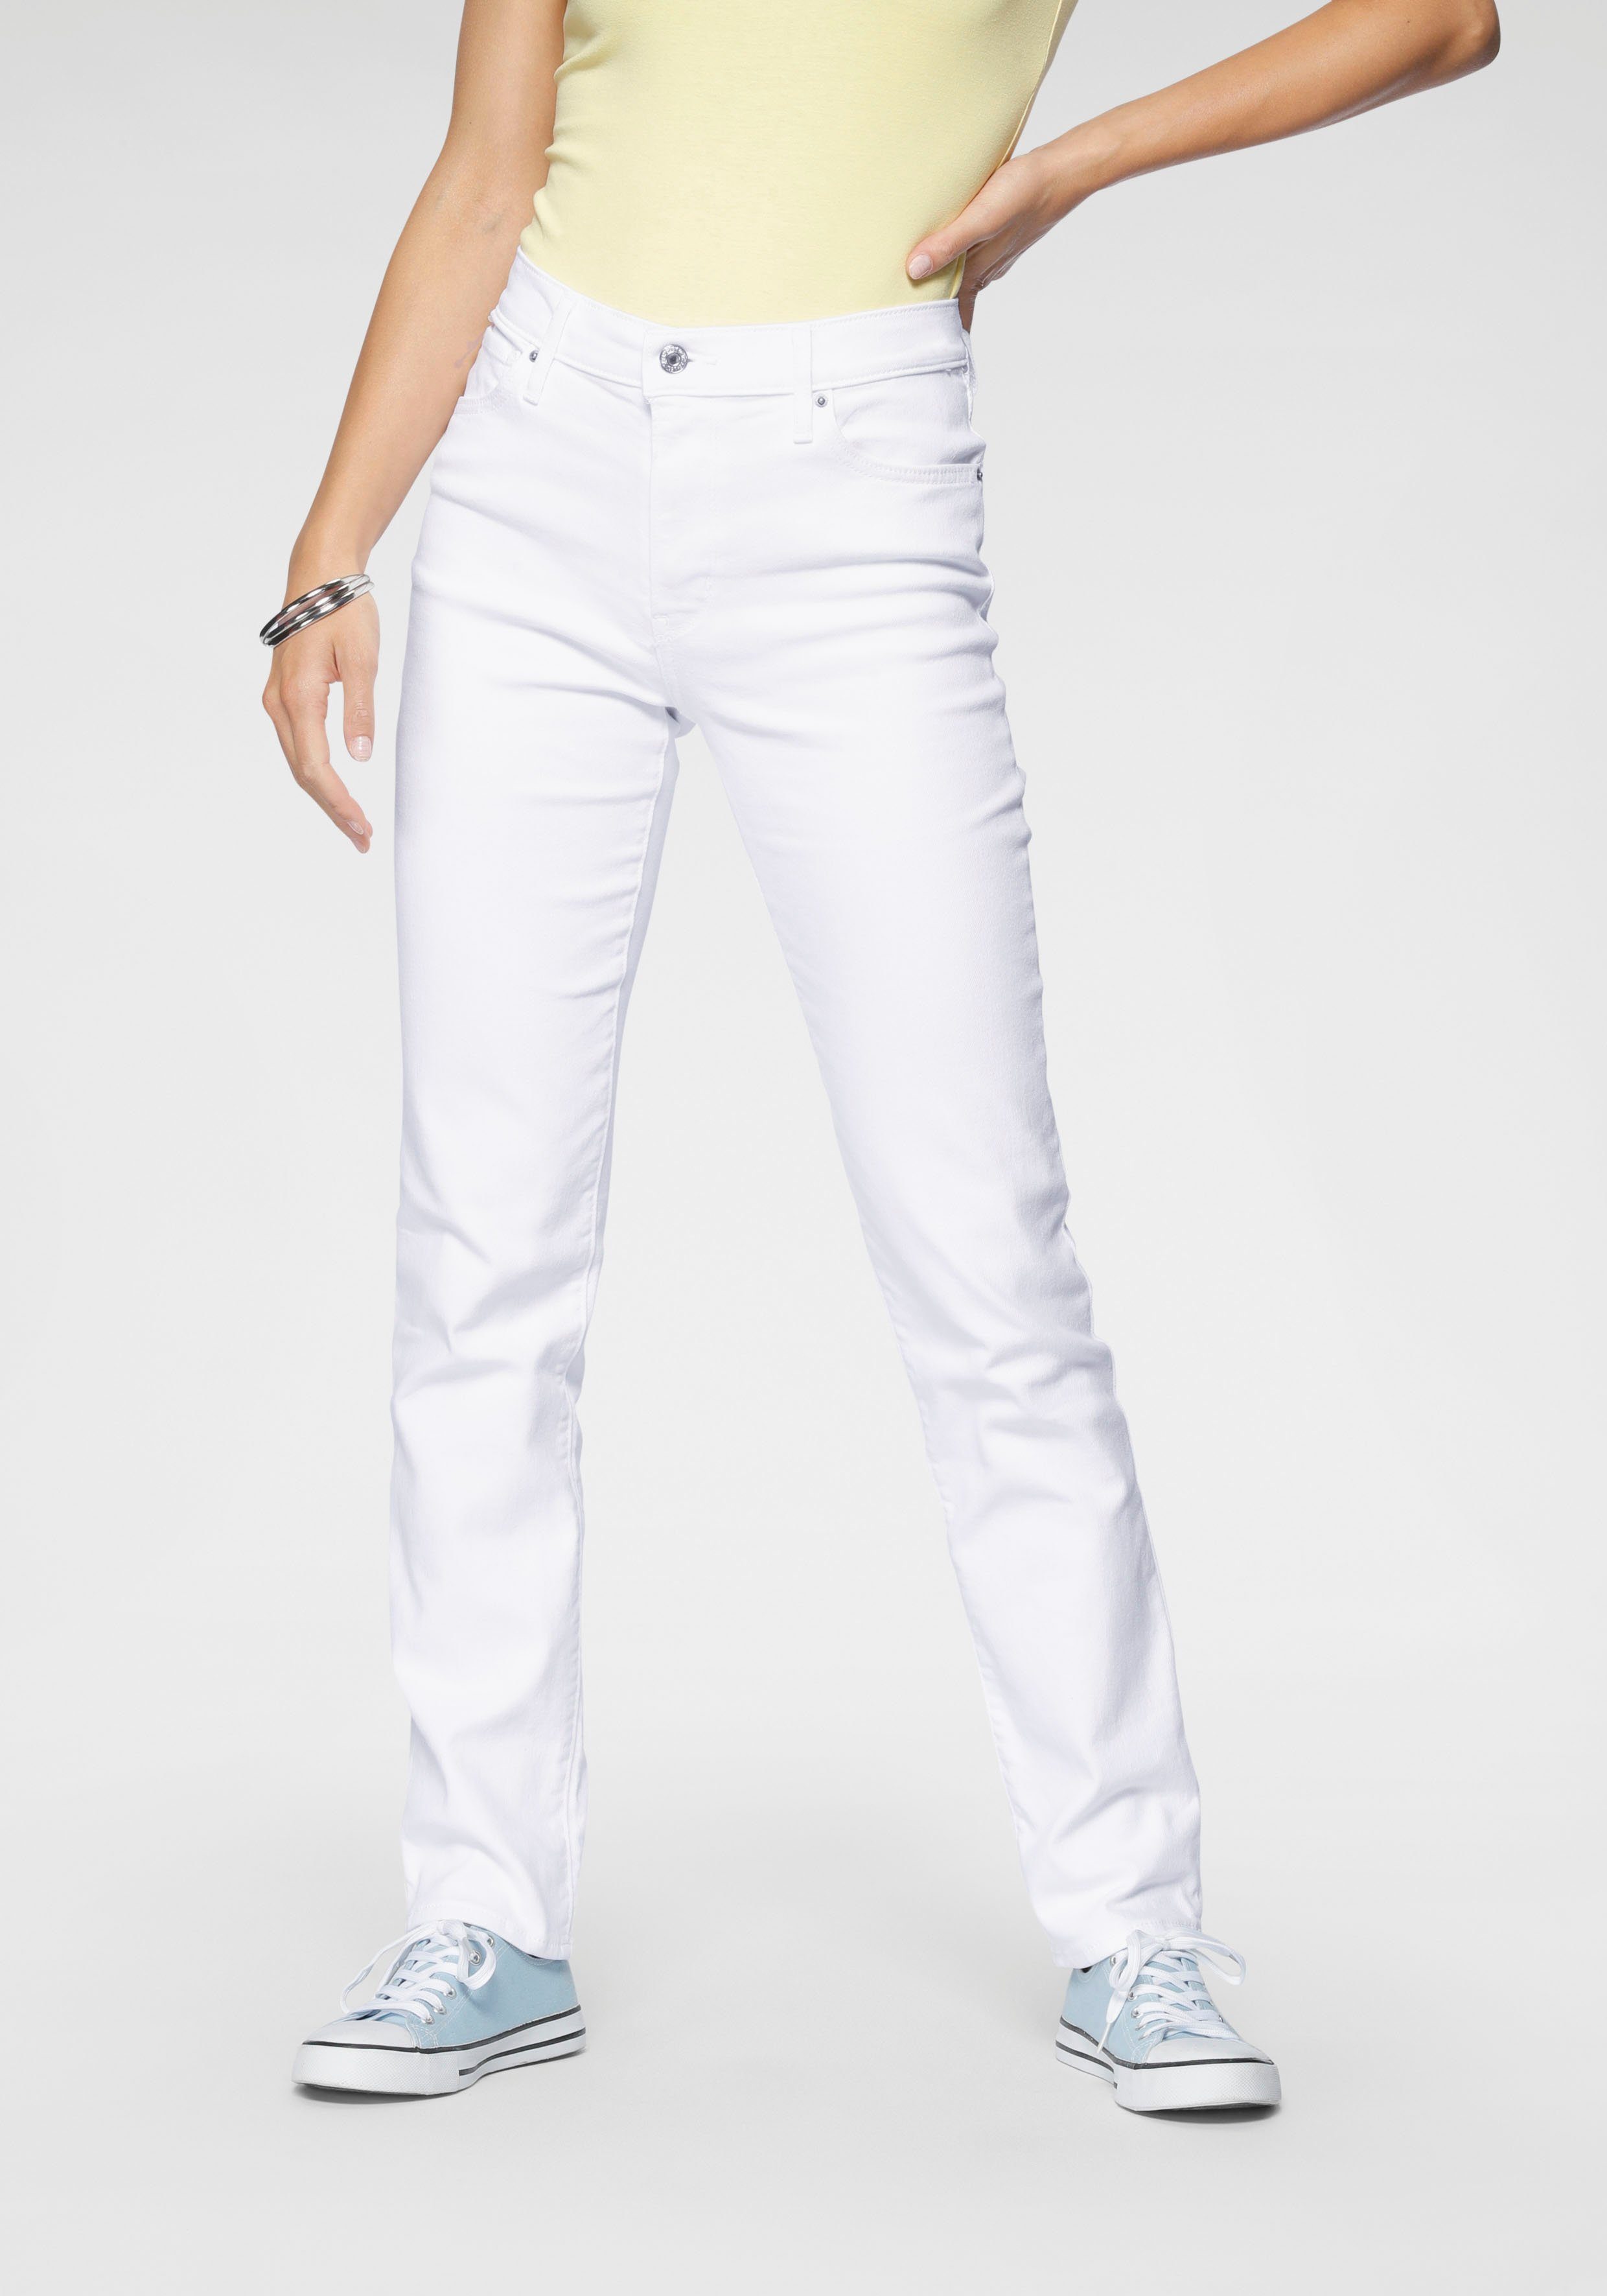 Weiße Jeans für Damen online kaufen » Weiße Jeanshosen | OTTO